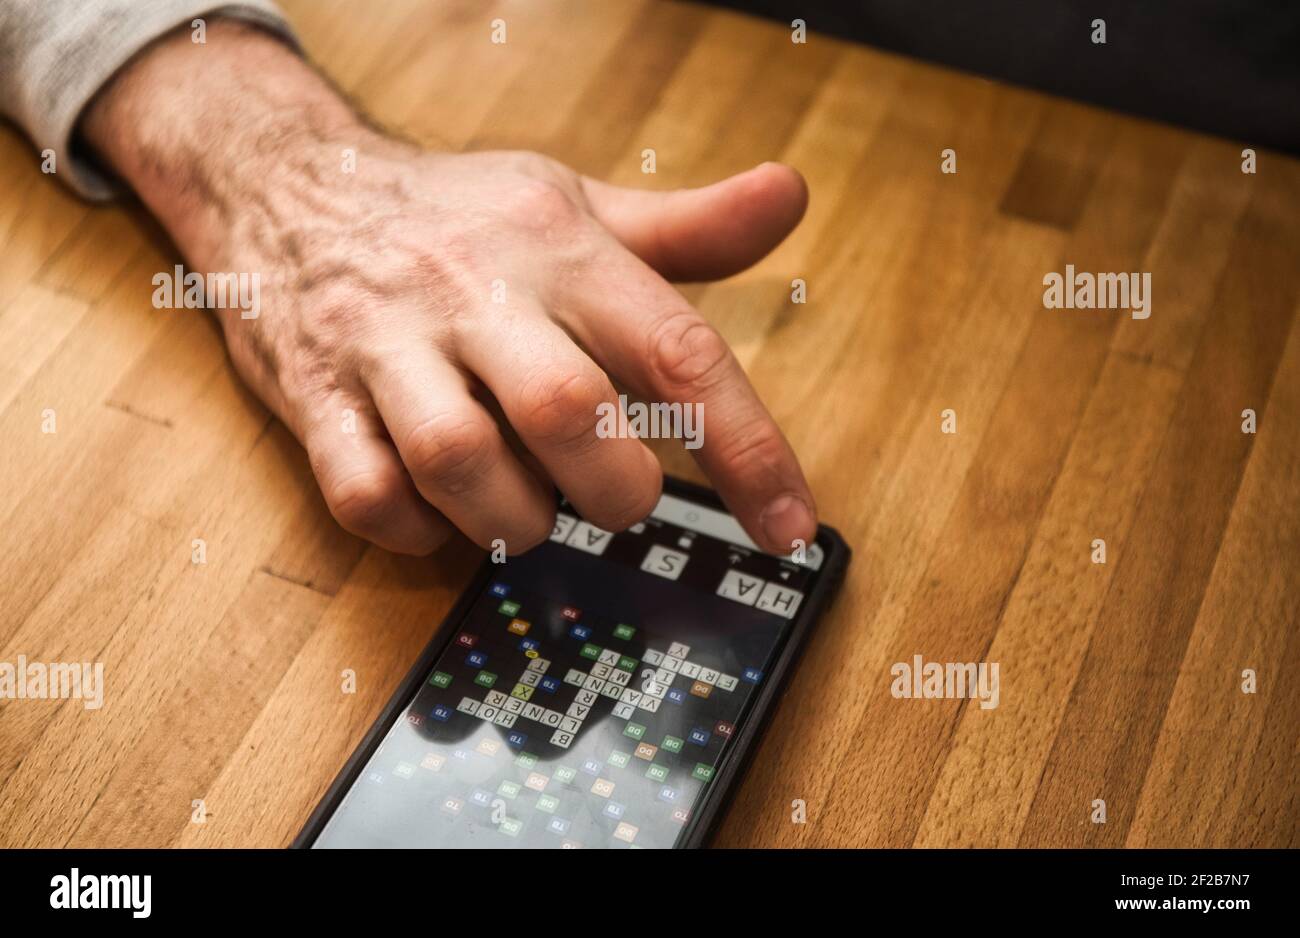 Spielen Wordfeud ein Scrabble wie Wortspiel für Smartphones. Konzept der drahtlosen Technologie, 21st-Jahrhundert-Unterhaltung Stockfoto